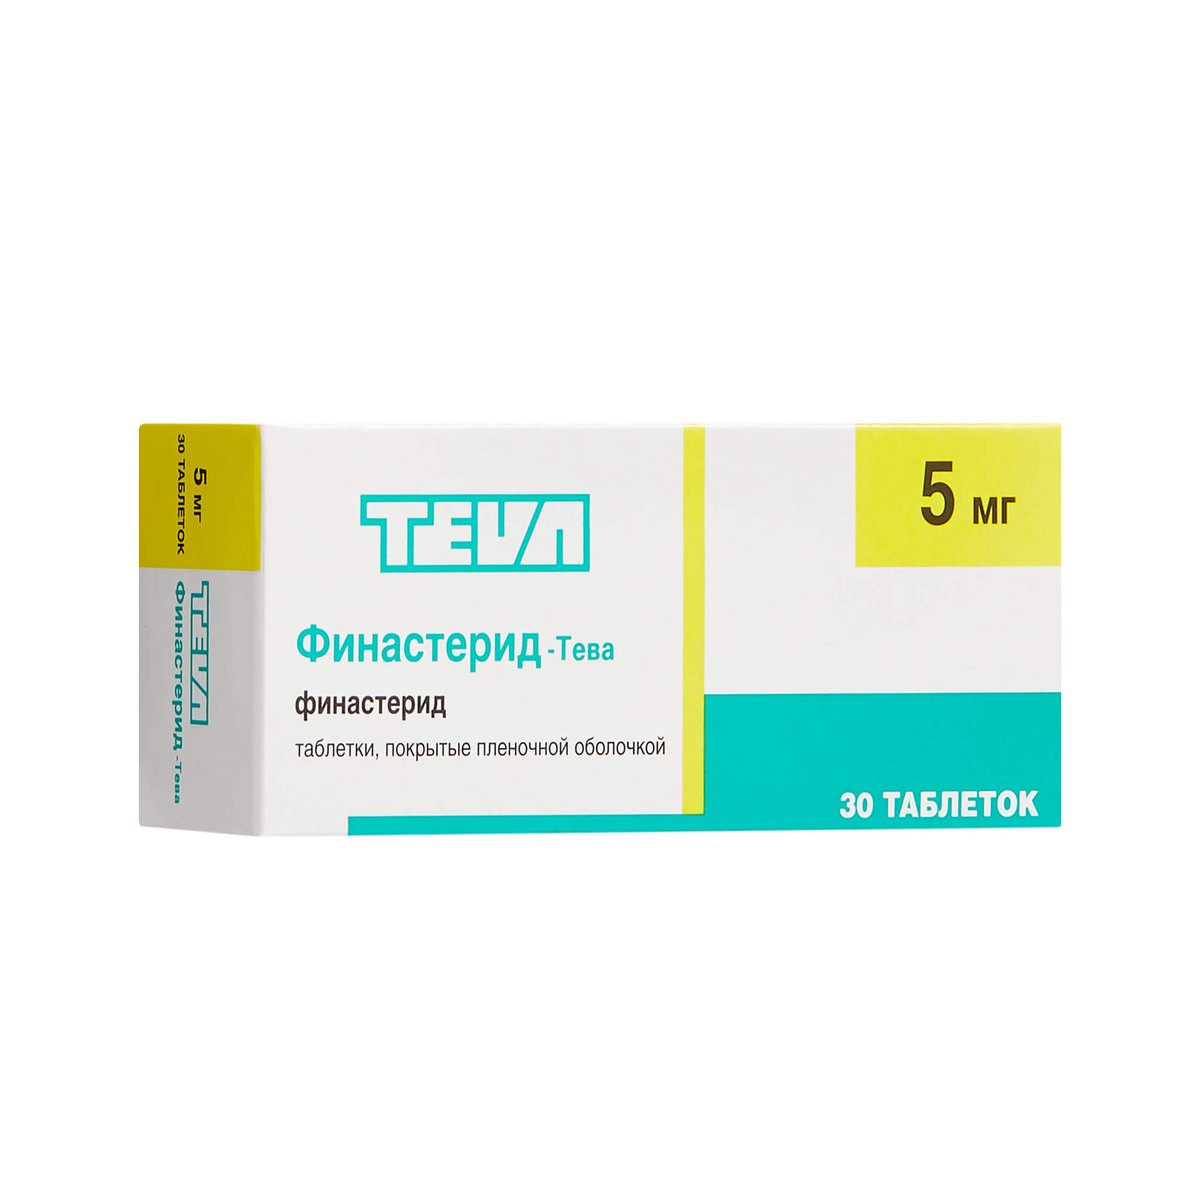 Финастерид-Тева (таблетки, 30 шт, 5 мг) - цена,  онлайн  .